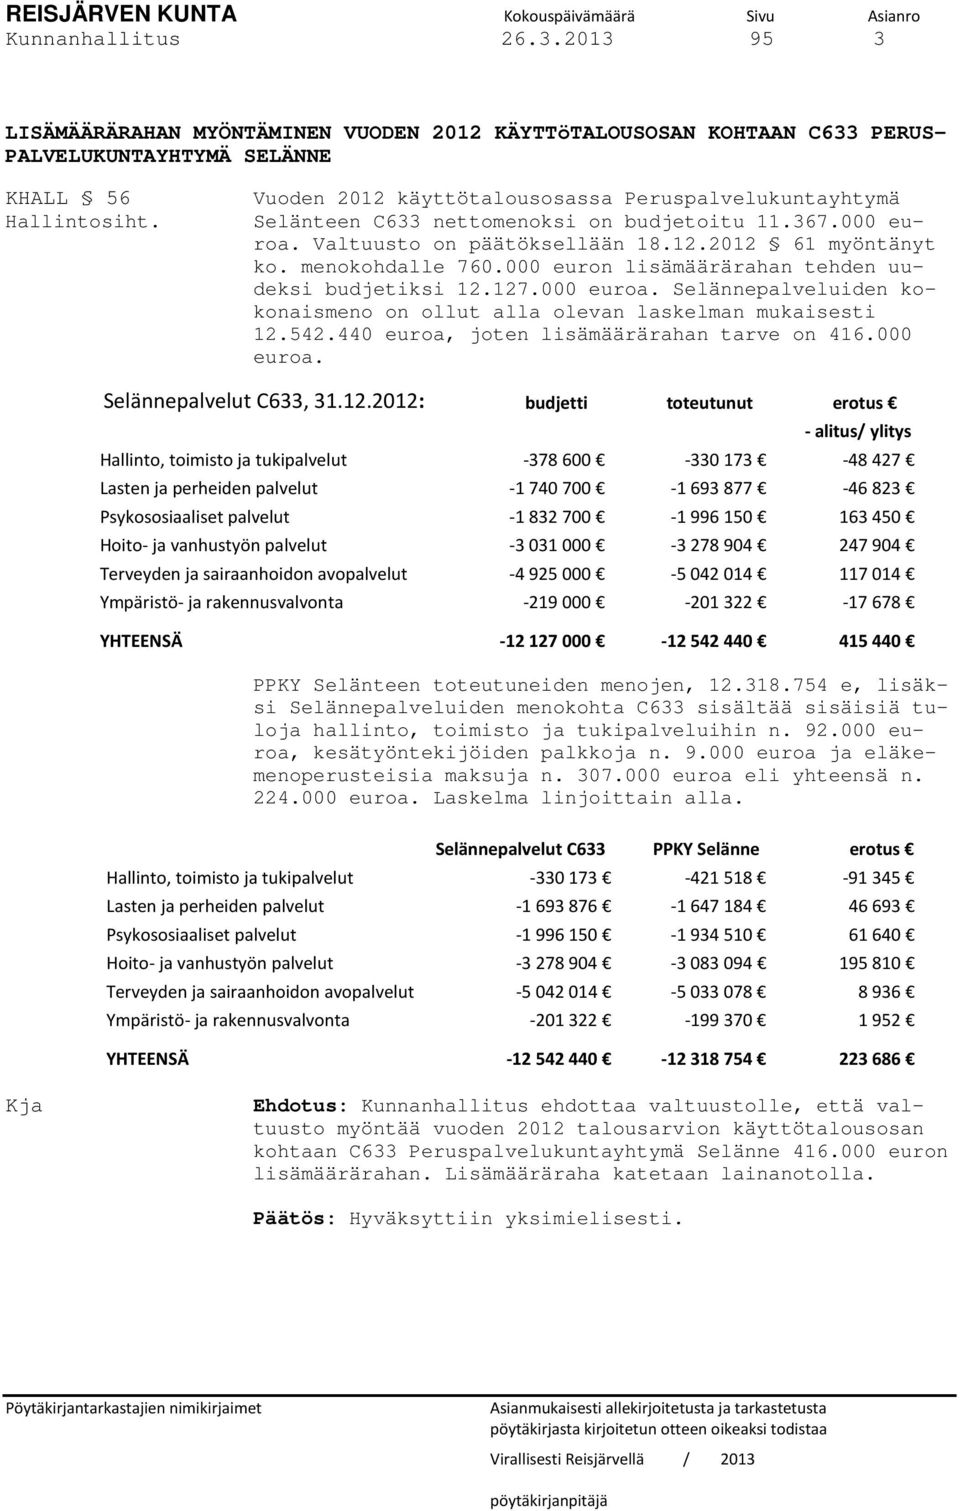 Vuoden 2012 käyttötalousosassa Peruspalvelukuntayhtymä Selänteen C633 nettomenoksi on budjetoitu 11.367.000 euroa. Valtuusto on päätöksellään 18.12.2012 61 myöntänyt ko. menokohdalle 760.